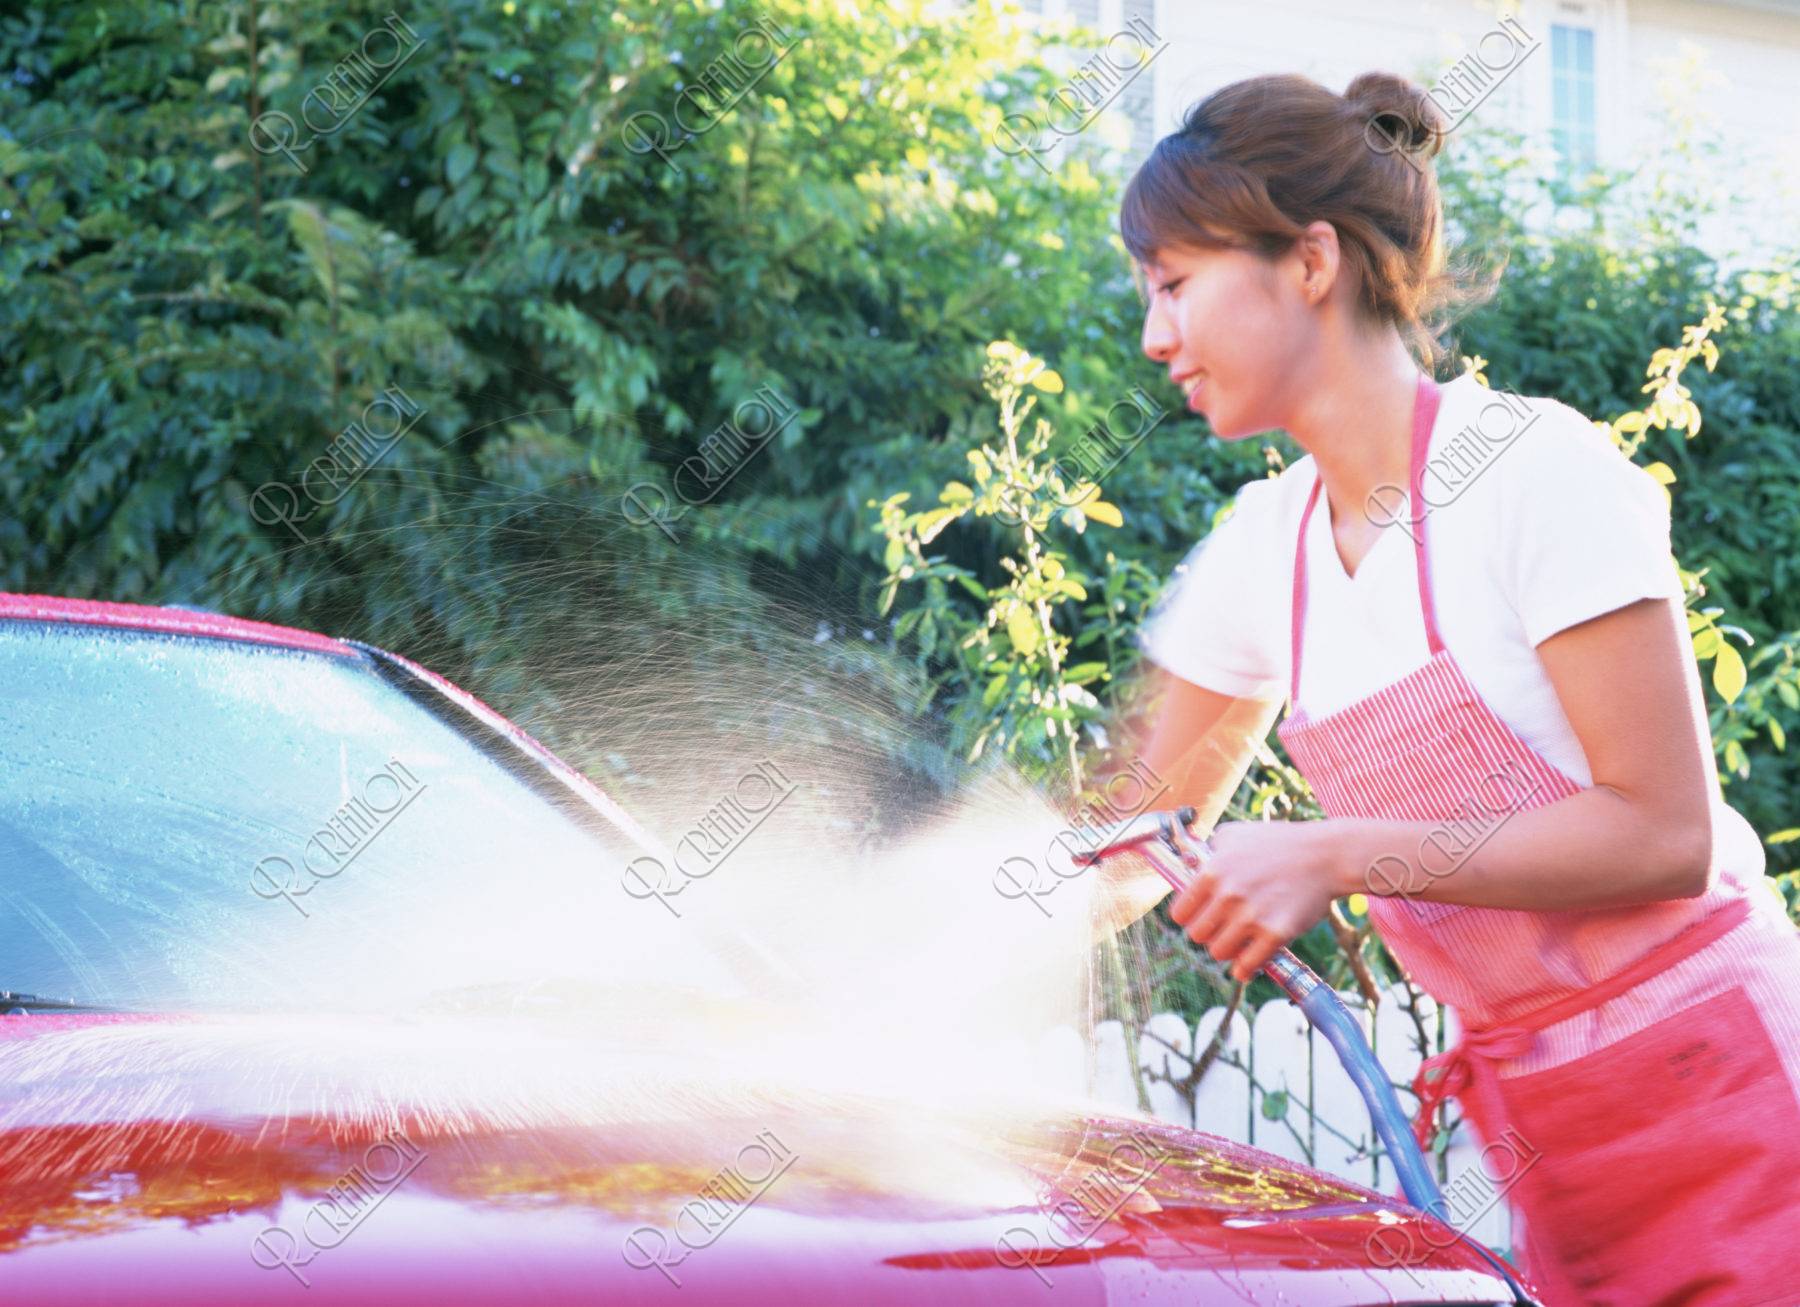 洗車をする女性